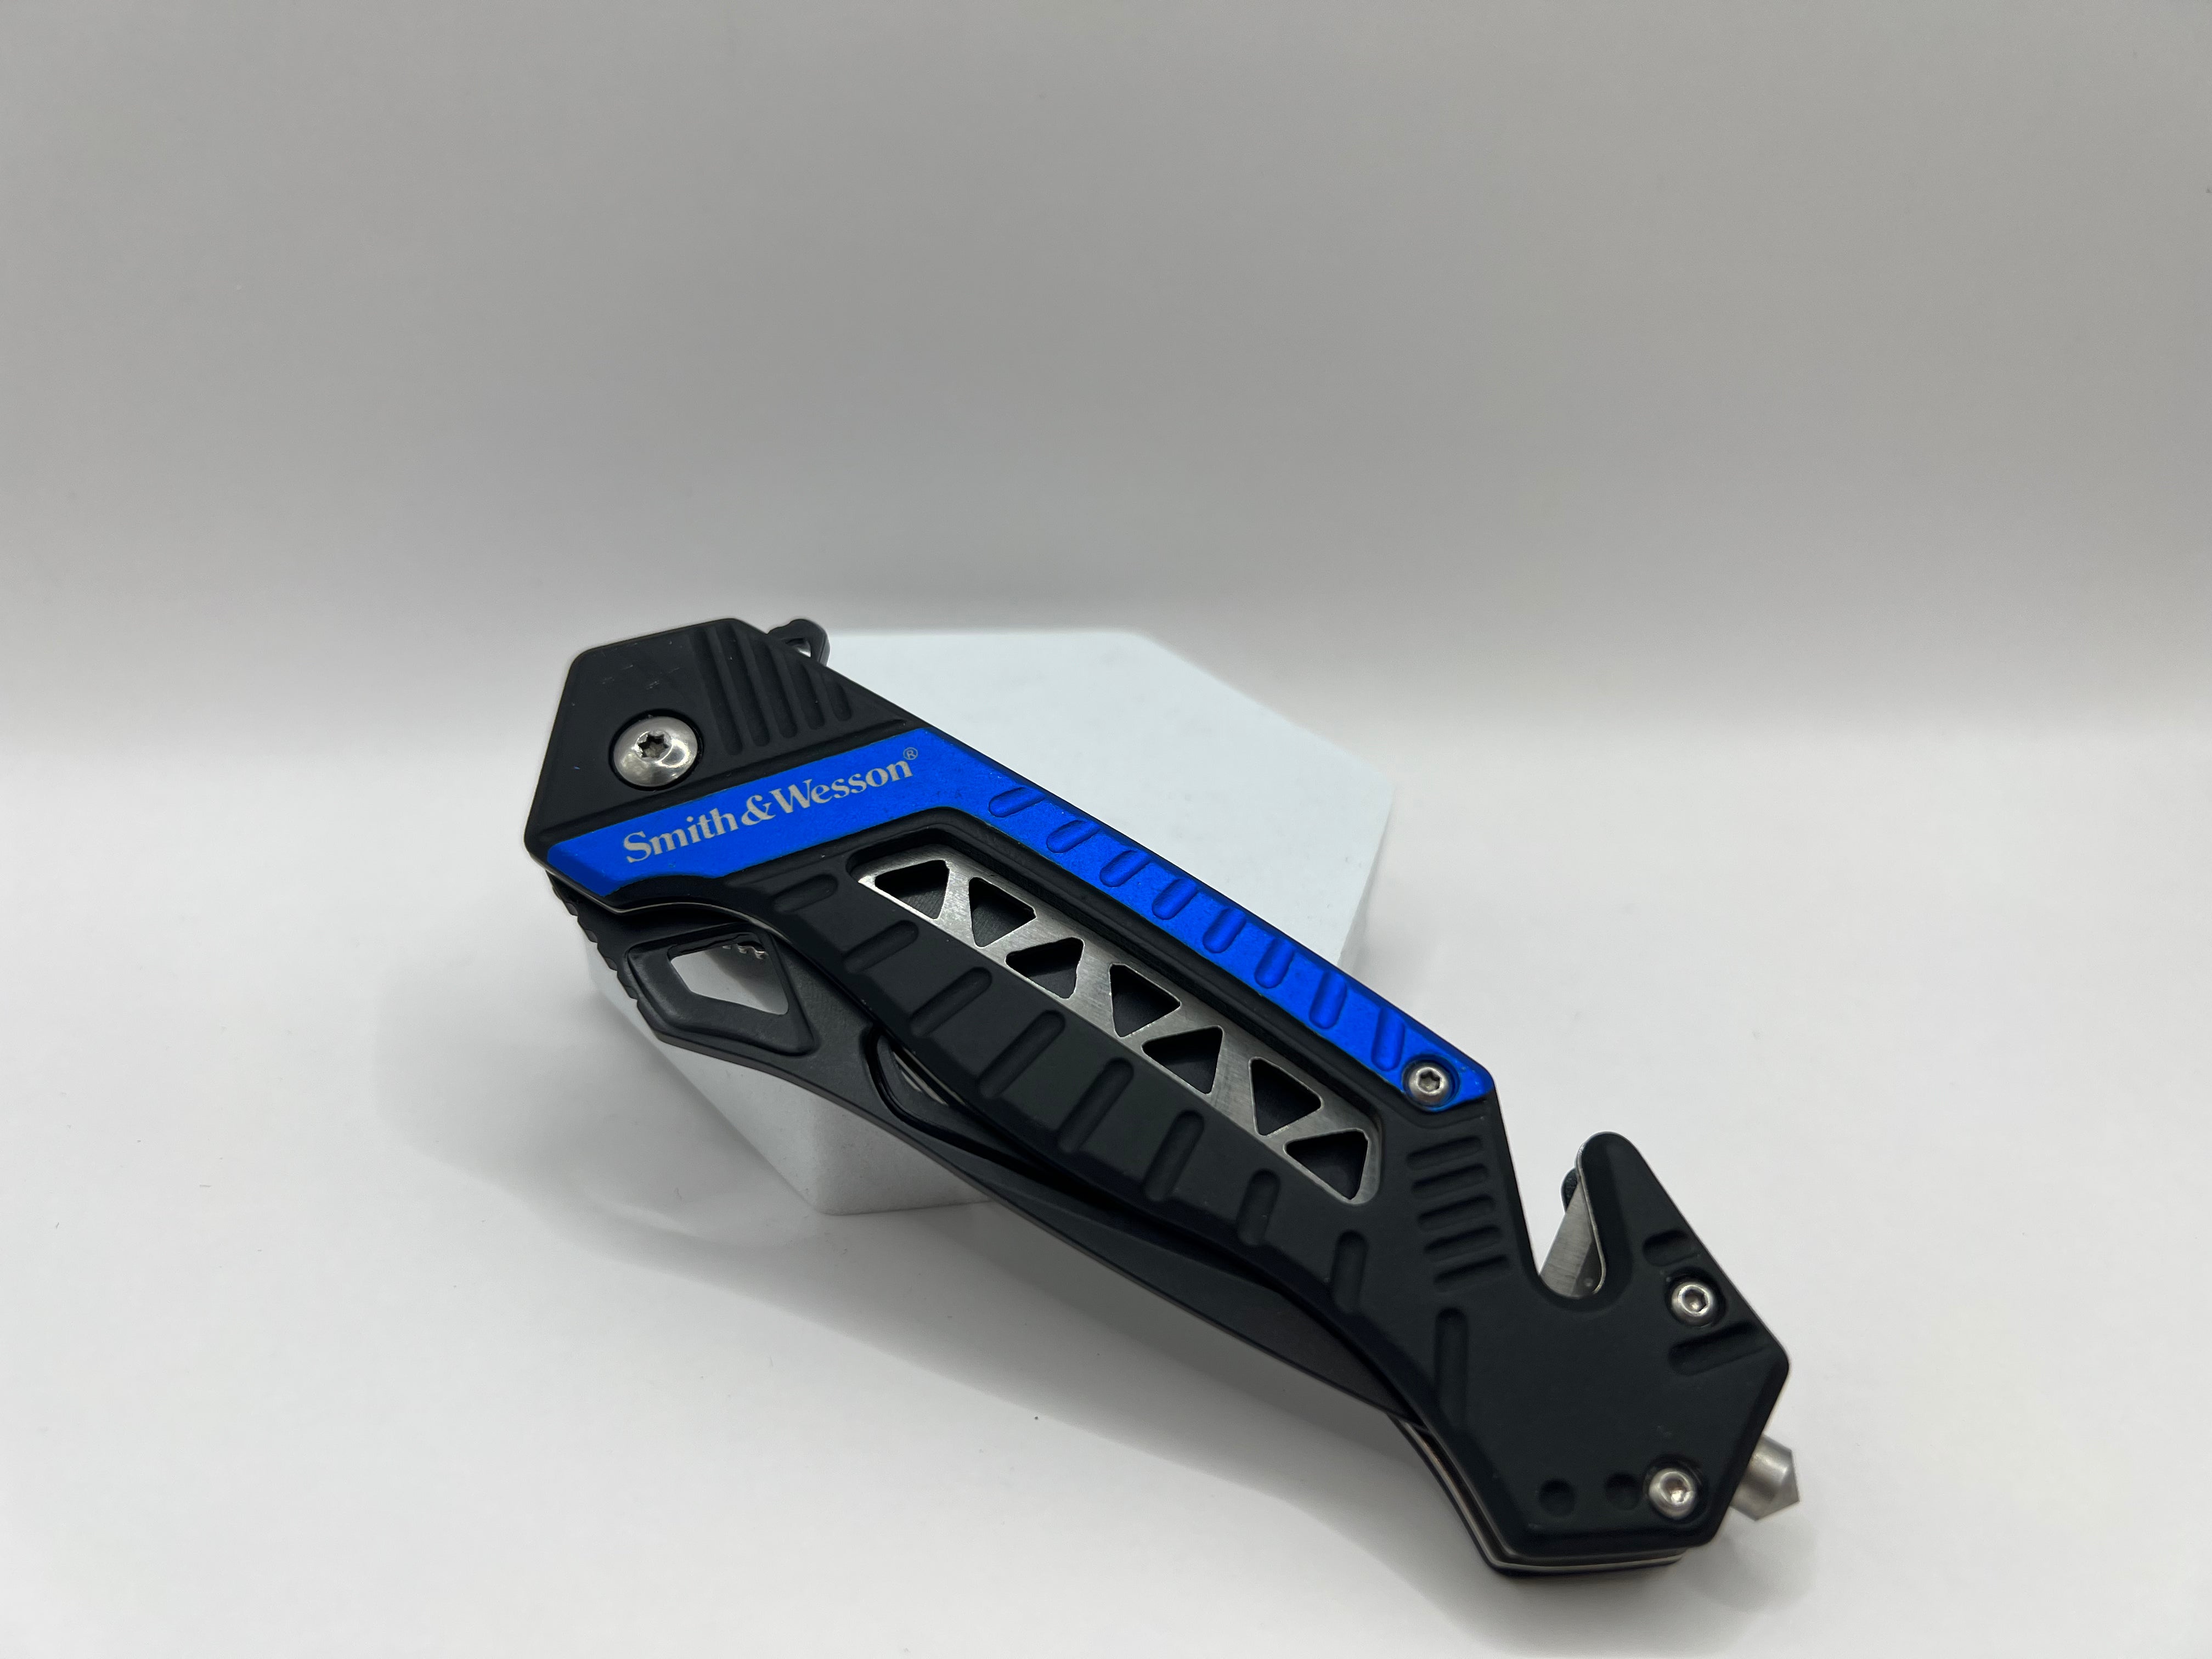 Smith & Wesson Rescue Taschenmesser Blau - Zuverlässige Leistung für Rettungs- und Alltagssituationen